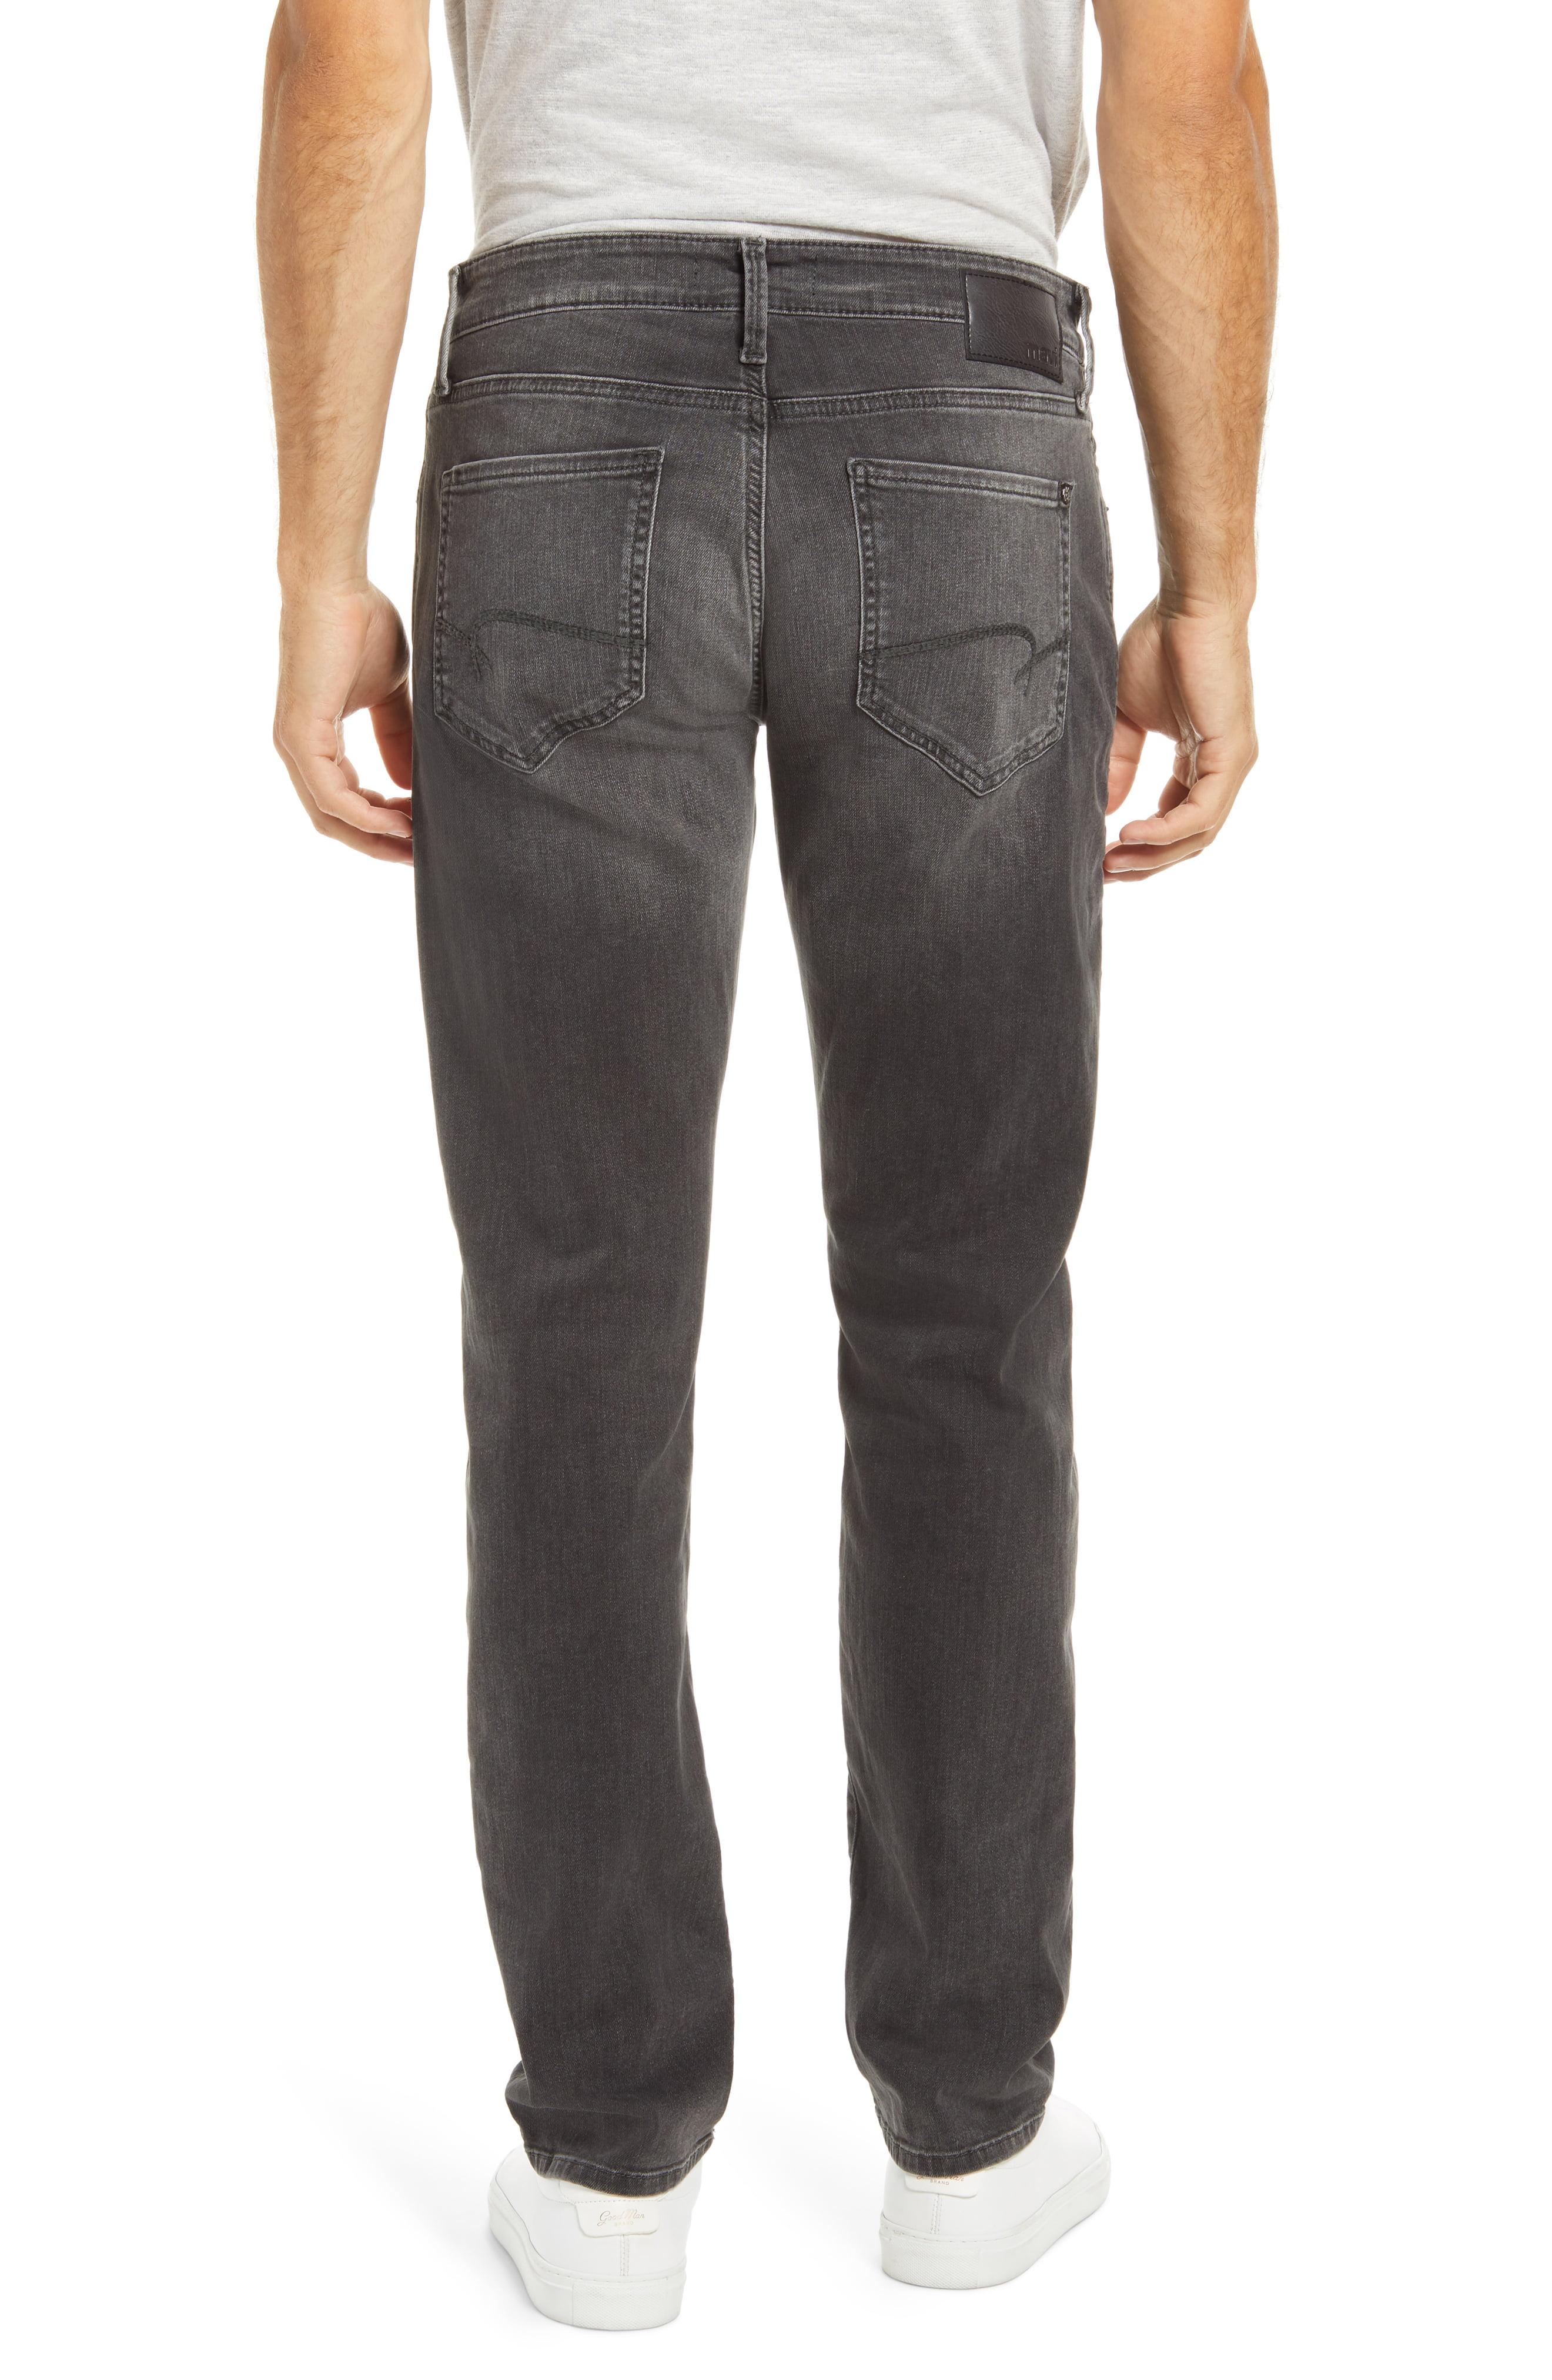 Mavi Denim Marcus Slim Straight Leg Jeans in Gray for Men - Lyst